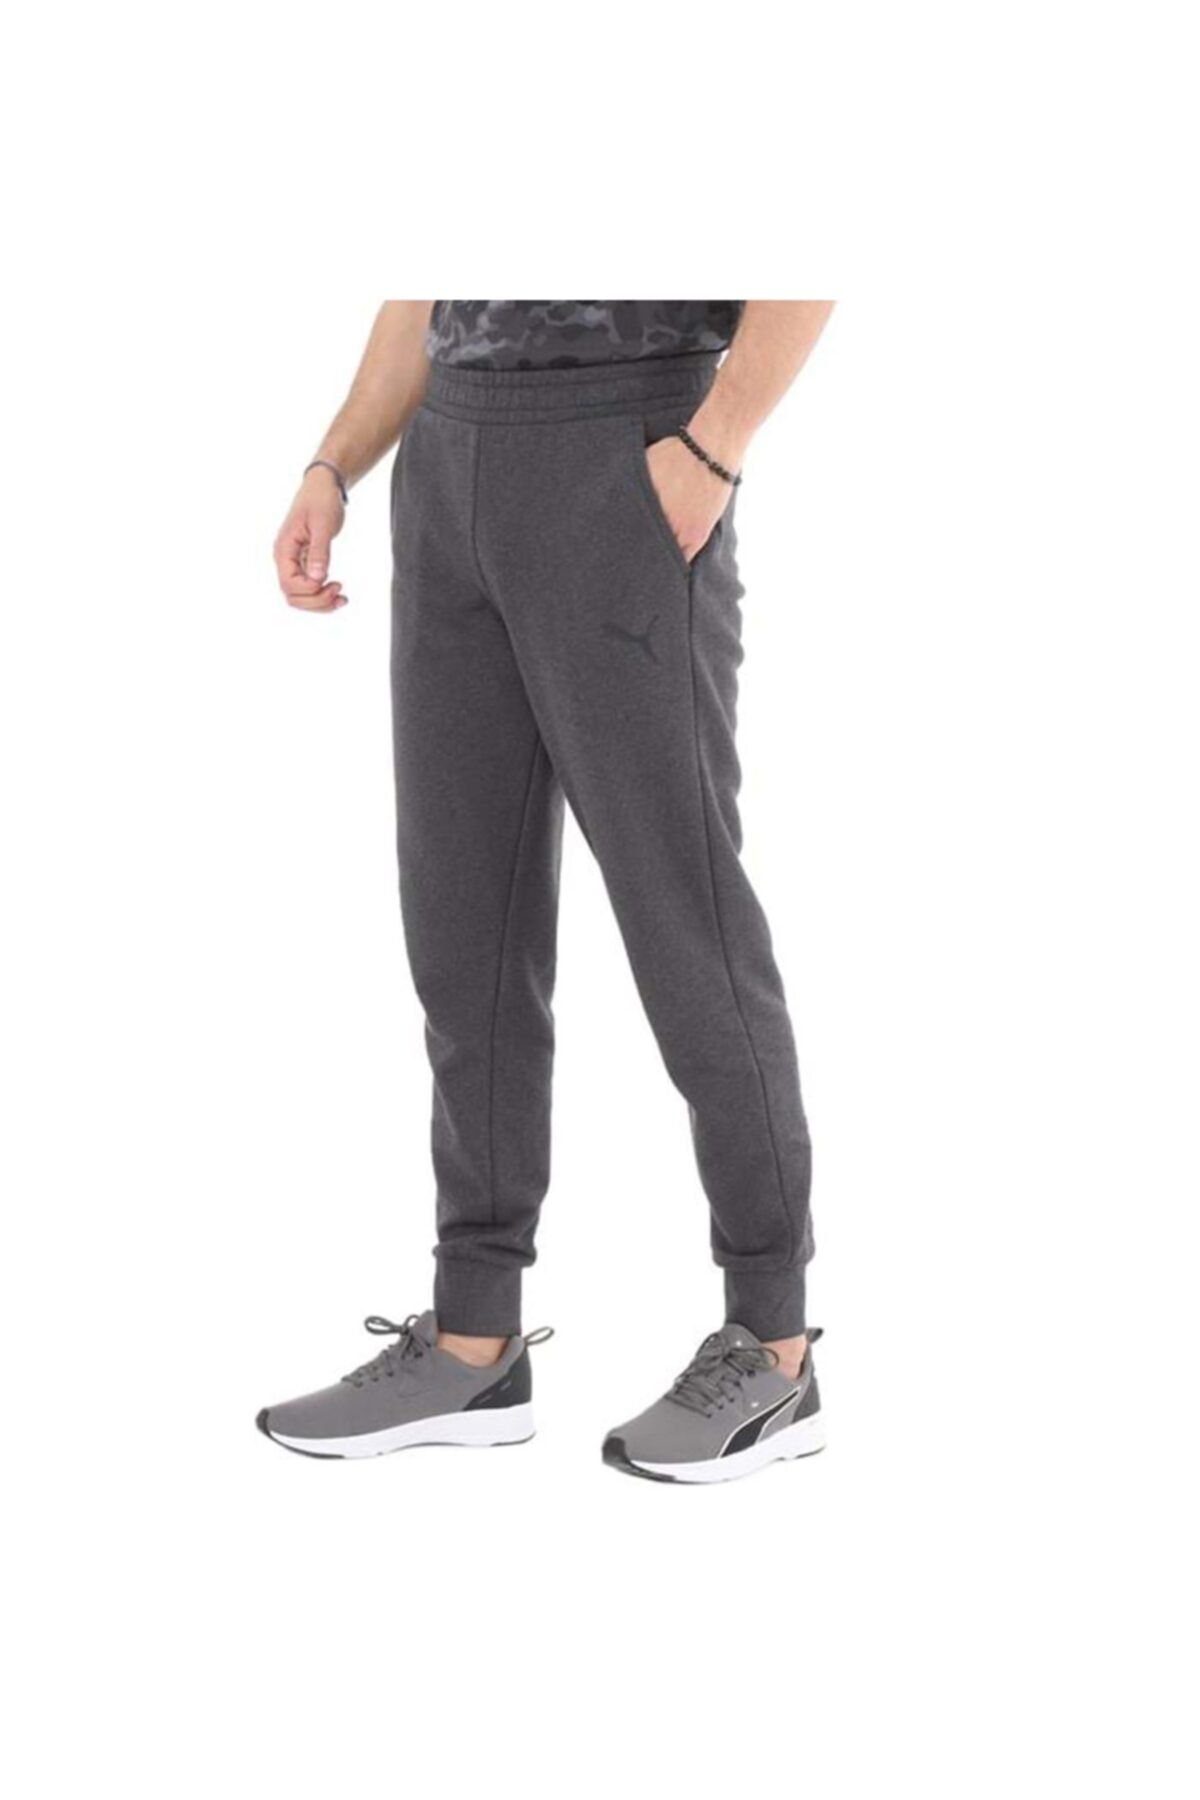 Puma Ess Logo Pants Tr Yorumları Heather-c Trendyol Dark Gray - Fiyatı, Cl